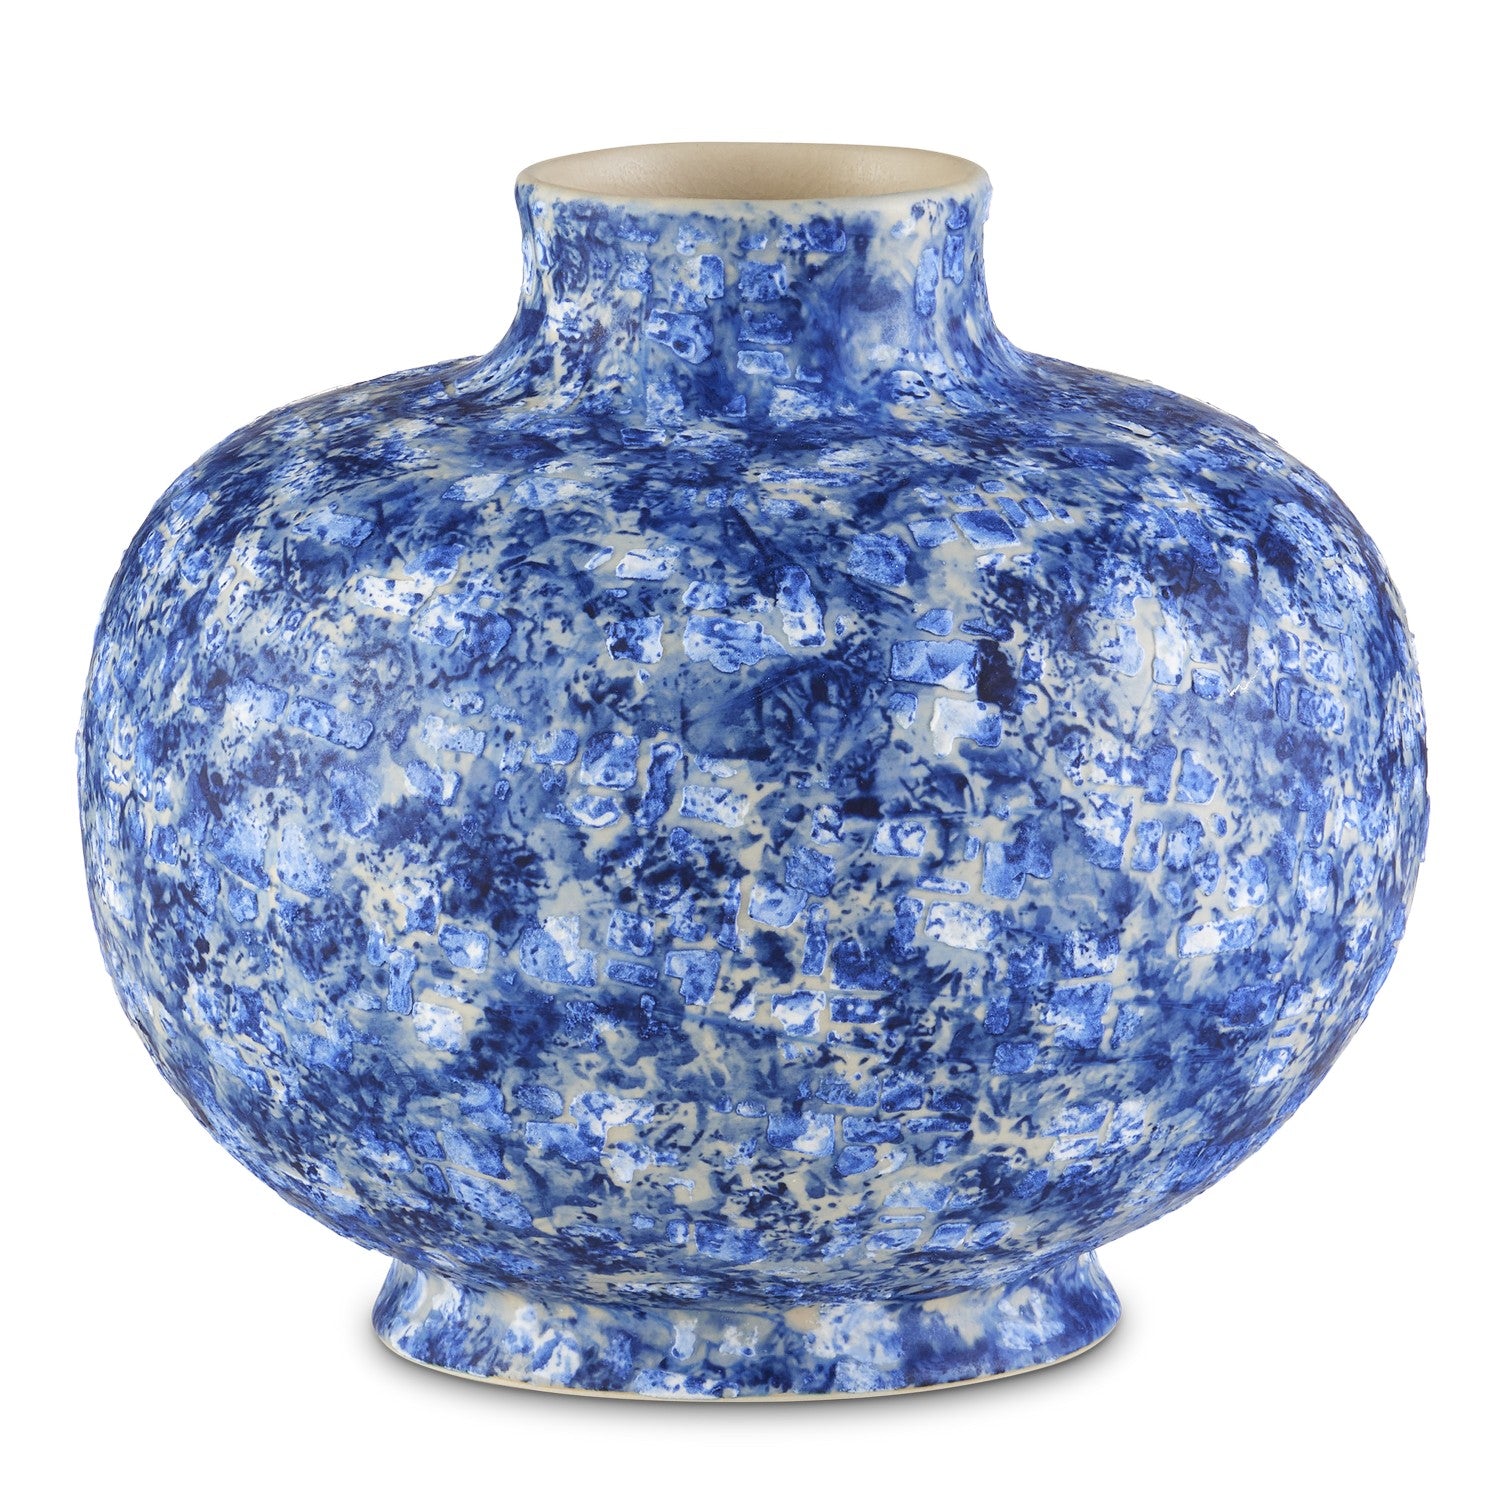 Currey and Company - Vase - Nixos - Blue/White- Union Lighting Luminaires Decor